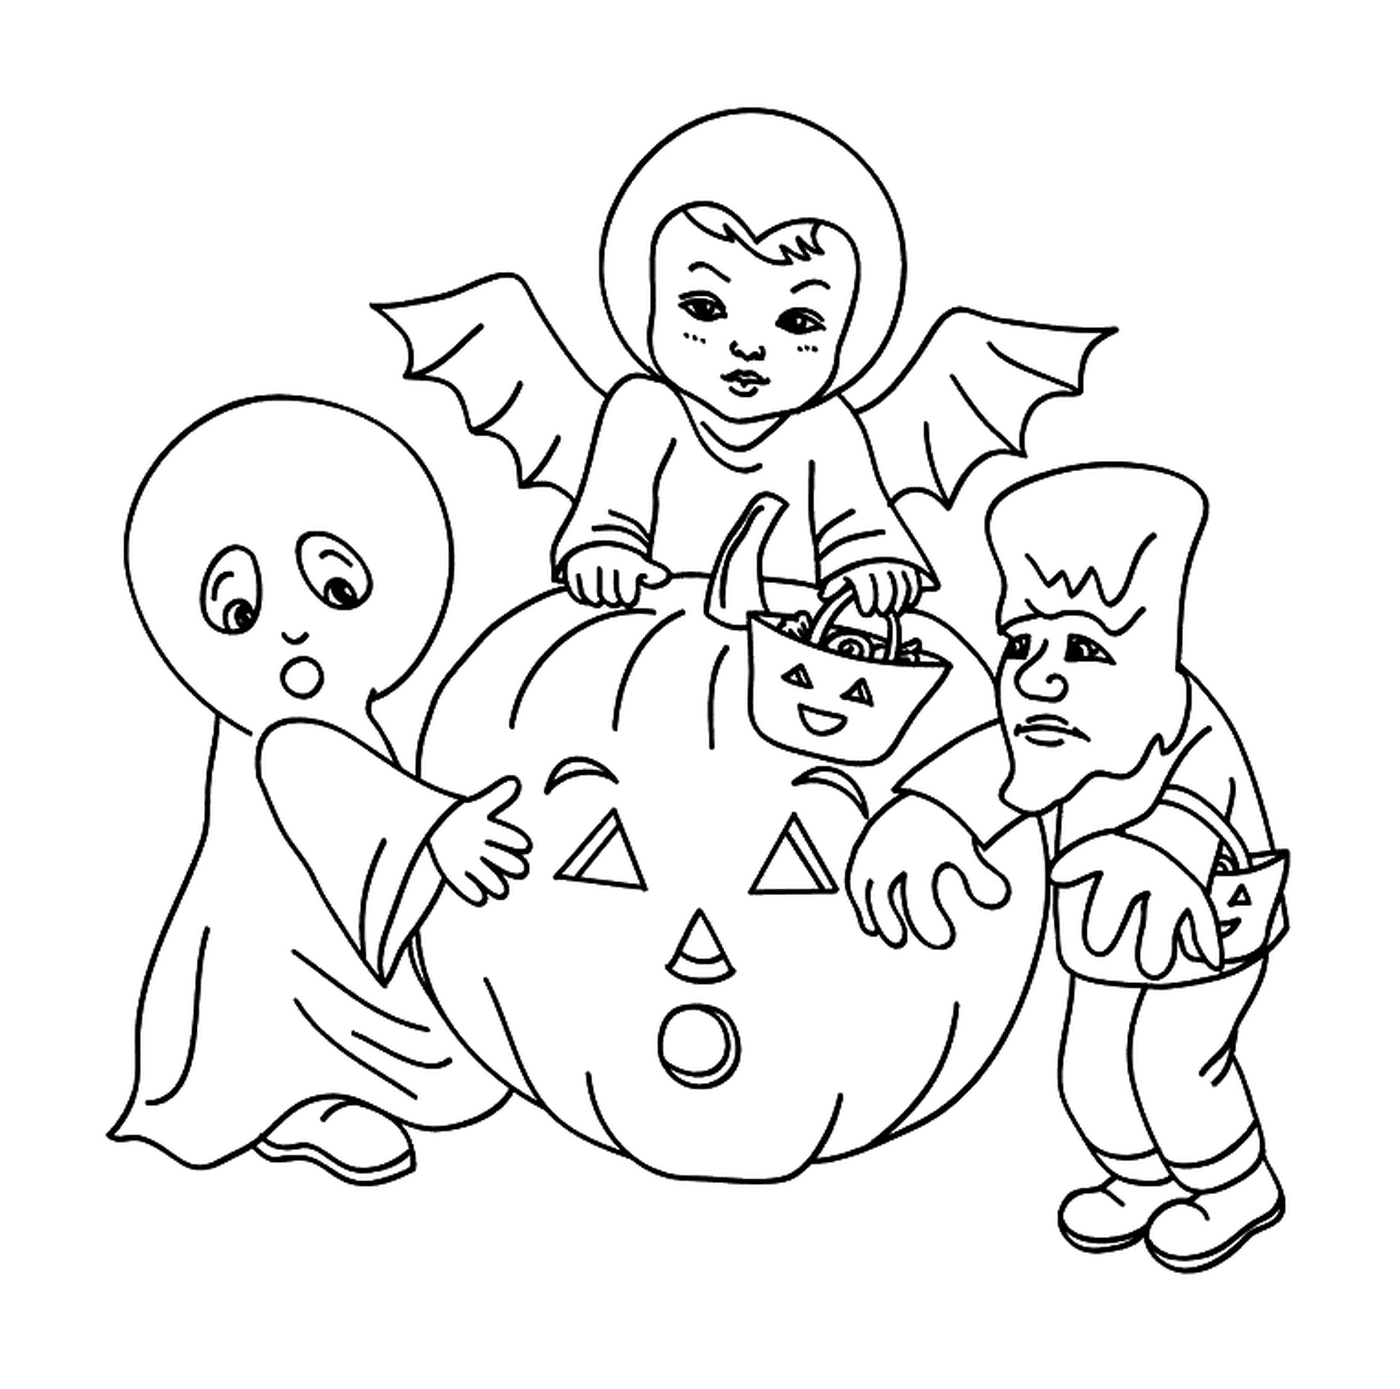  Трое детей нарядились на Хэллоуин с тыквой 